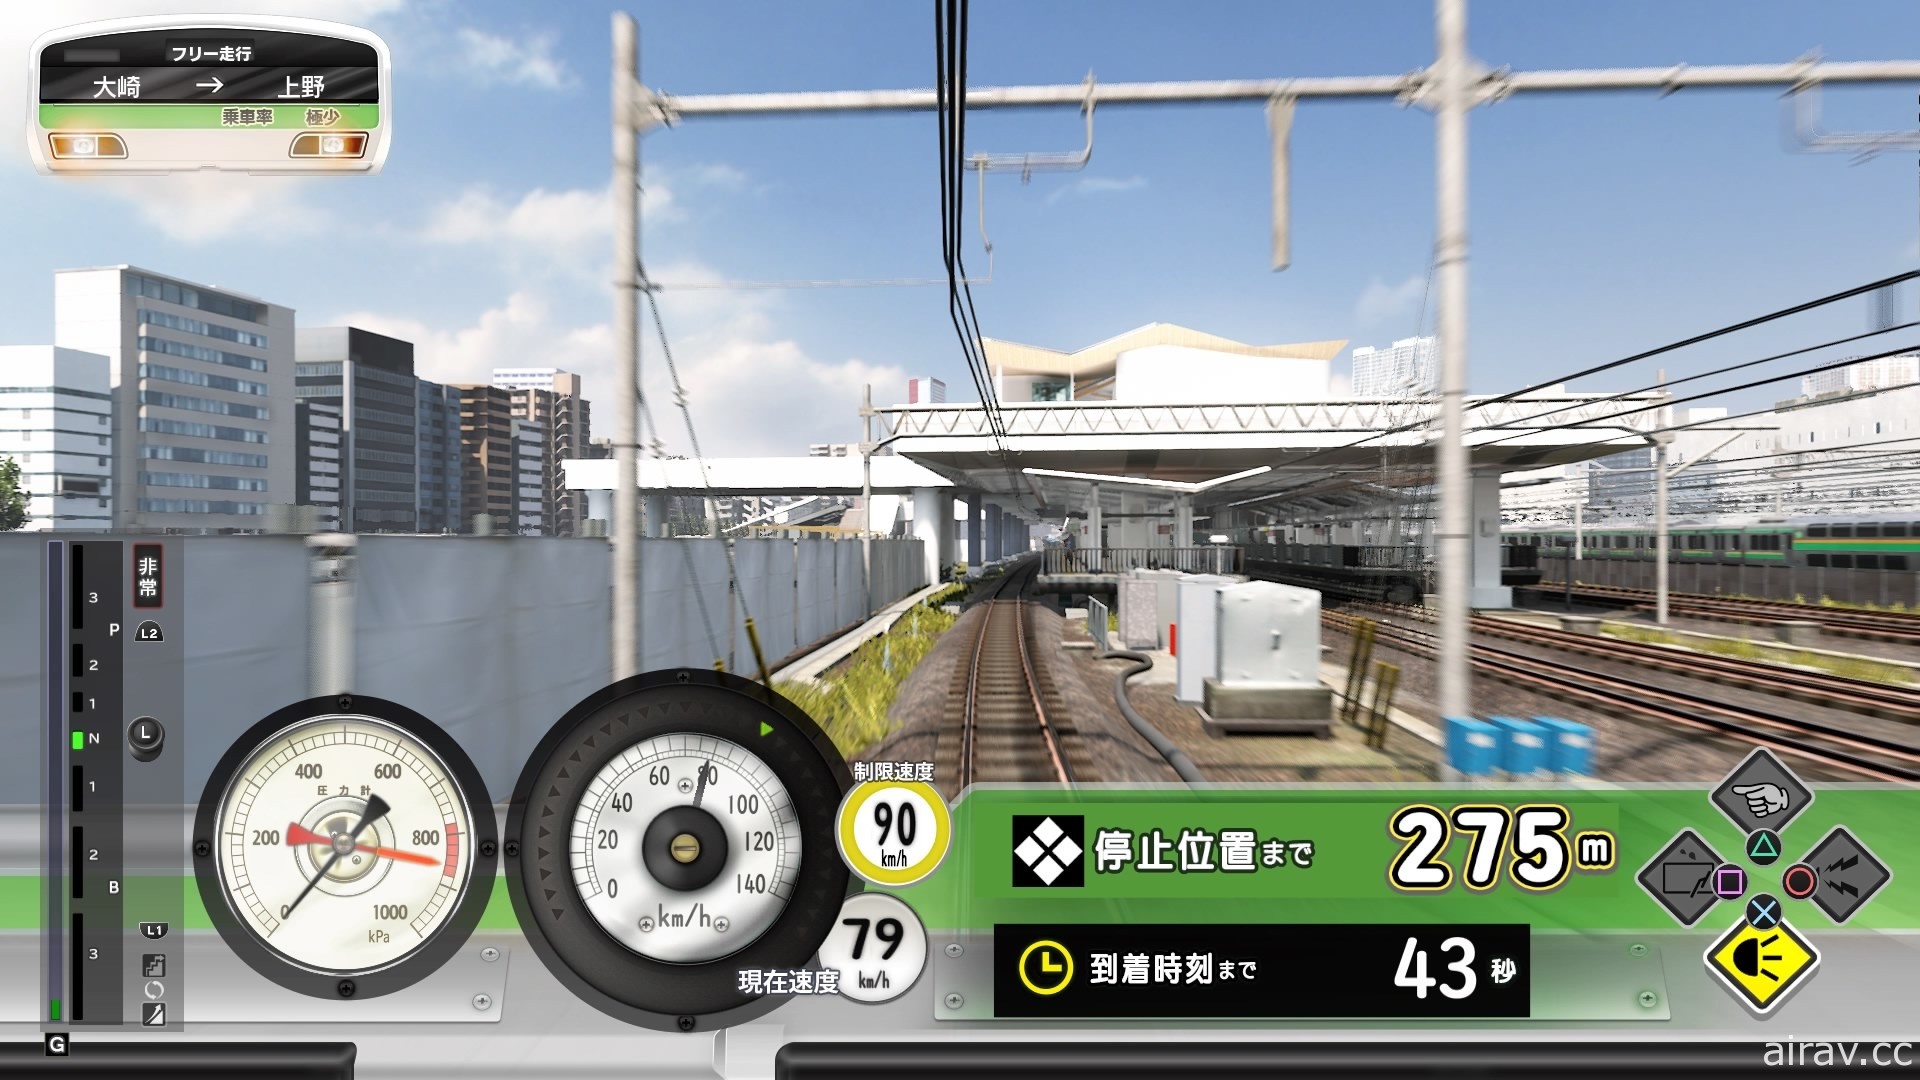 【试玩】PS4 版《电车向前走！！奔驰吧山手线》让人想起现实风景的梦想游戏